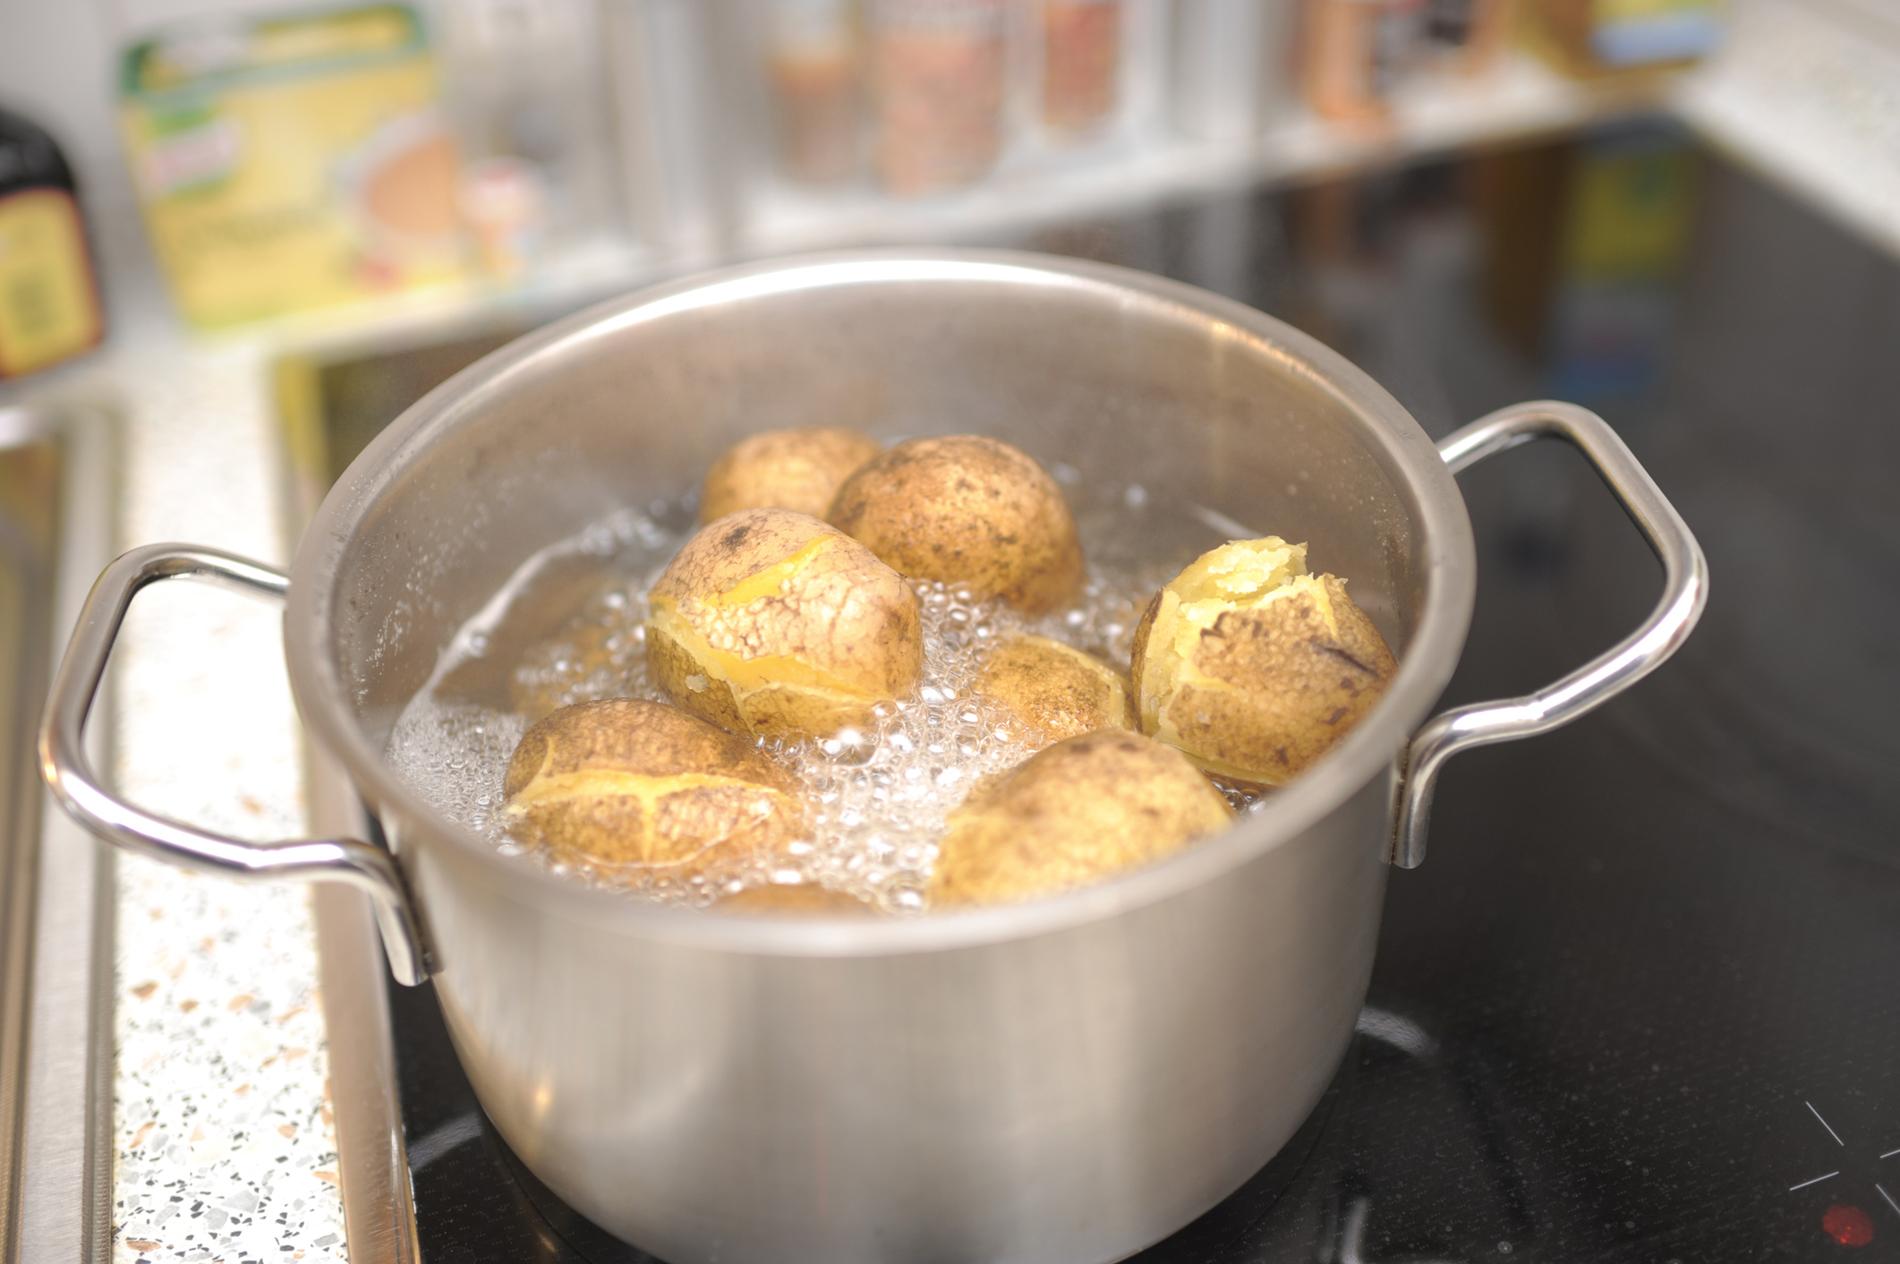 Картошка в кастрюле. Картофель кипит в кастрюле. Варка картофеля в кастрюле. Потато в кастрюле.